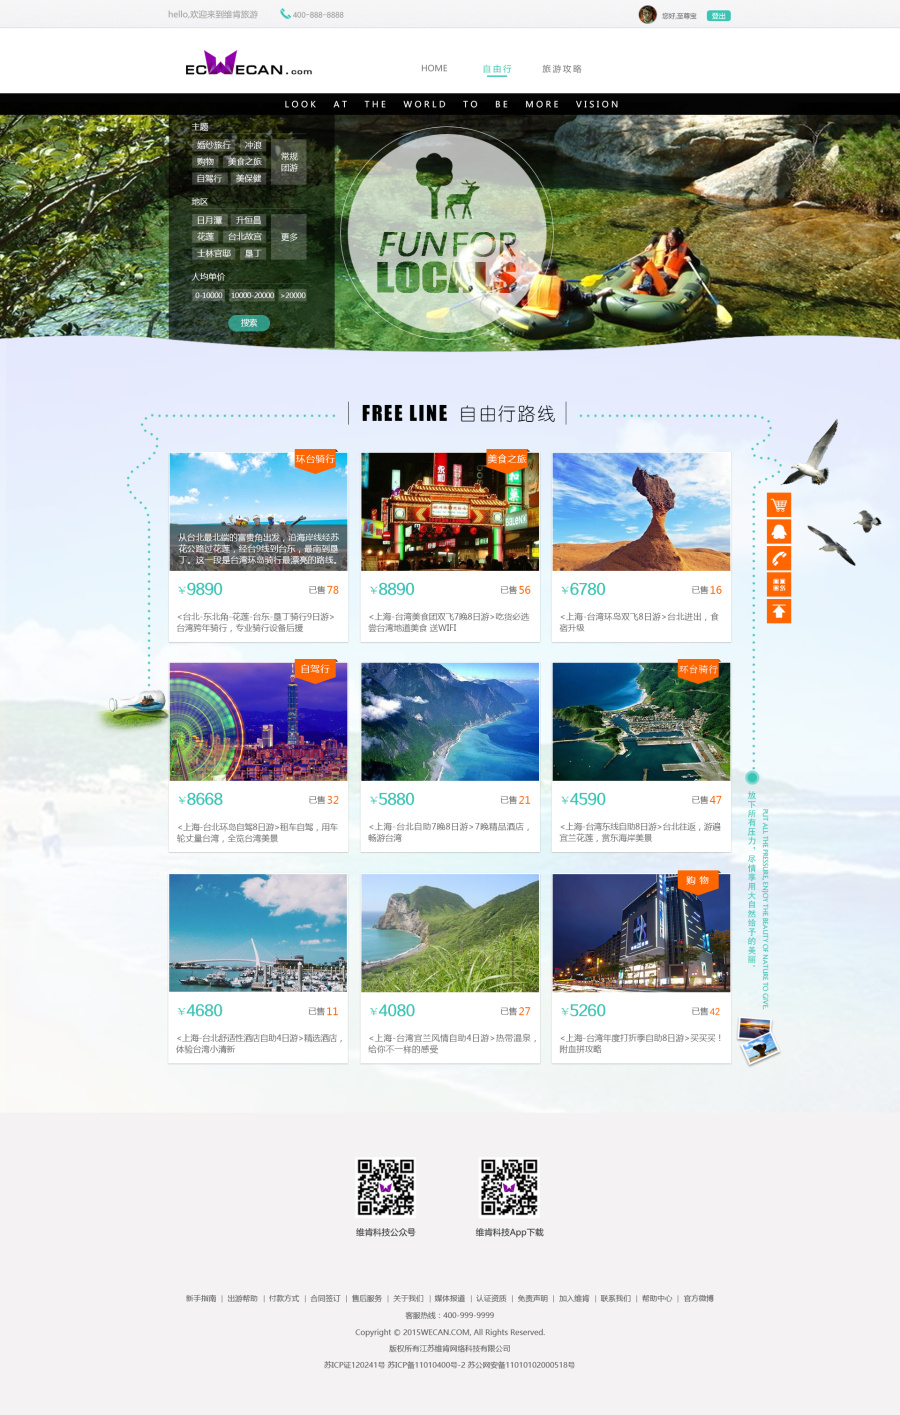 旅游类网站制作,攻略及自由行和会员中心页面